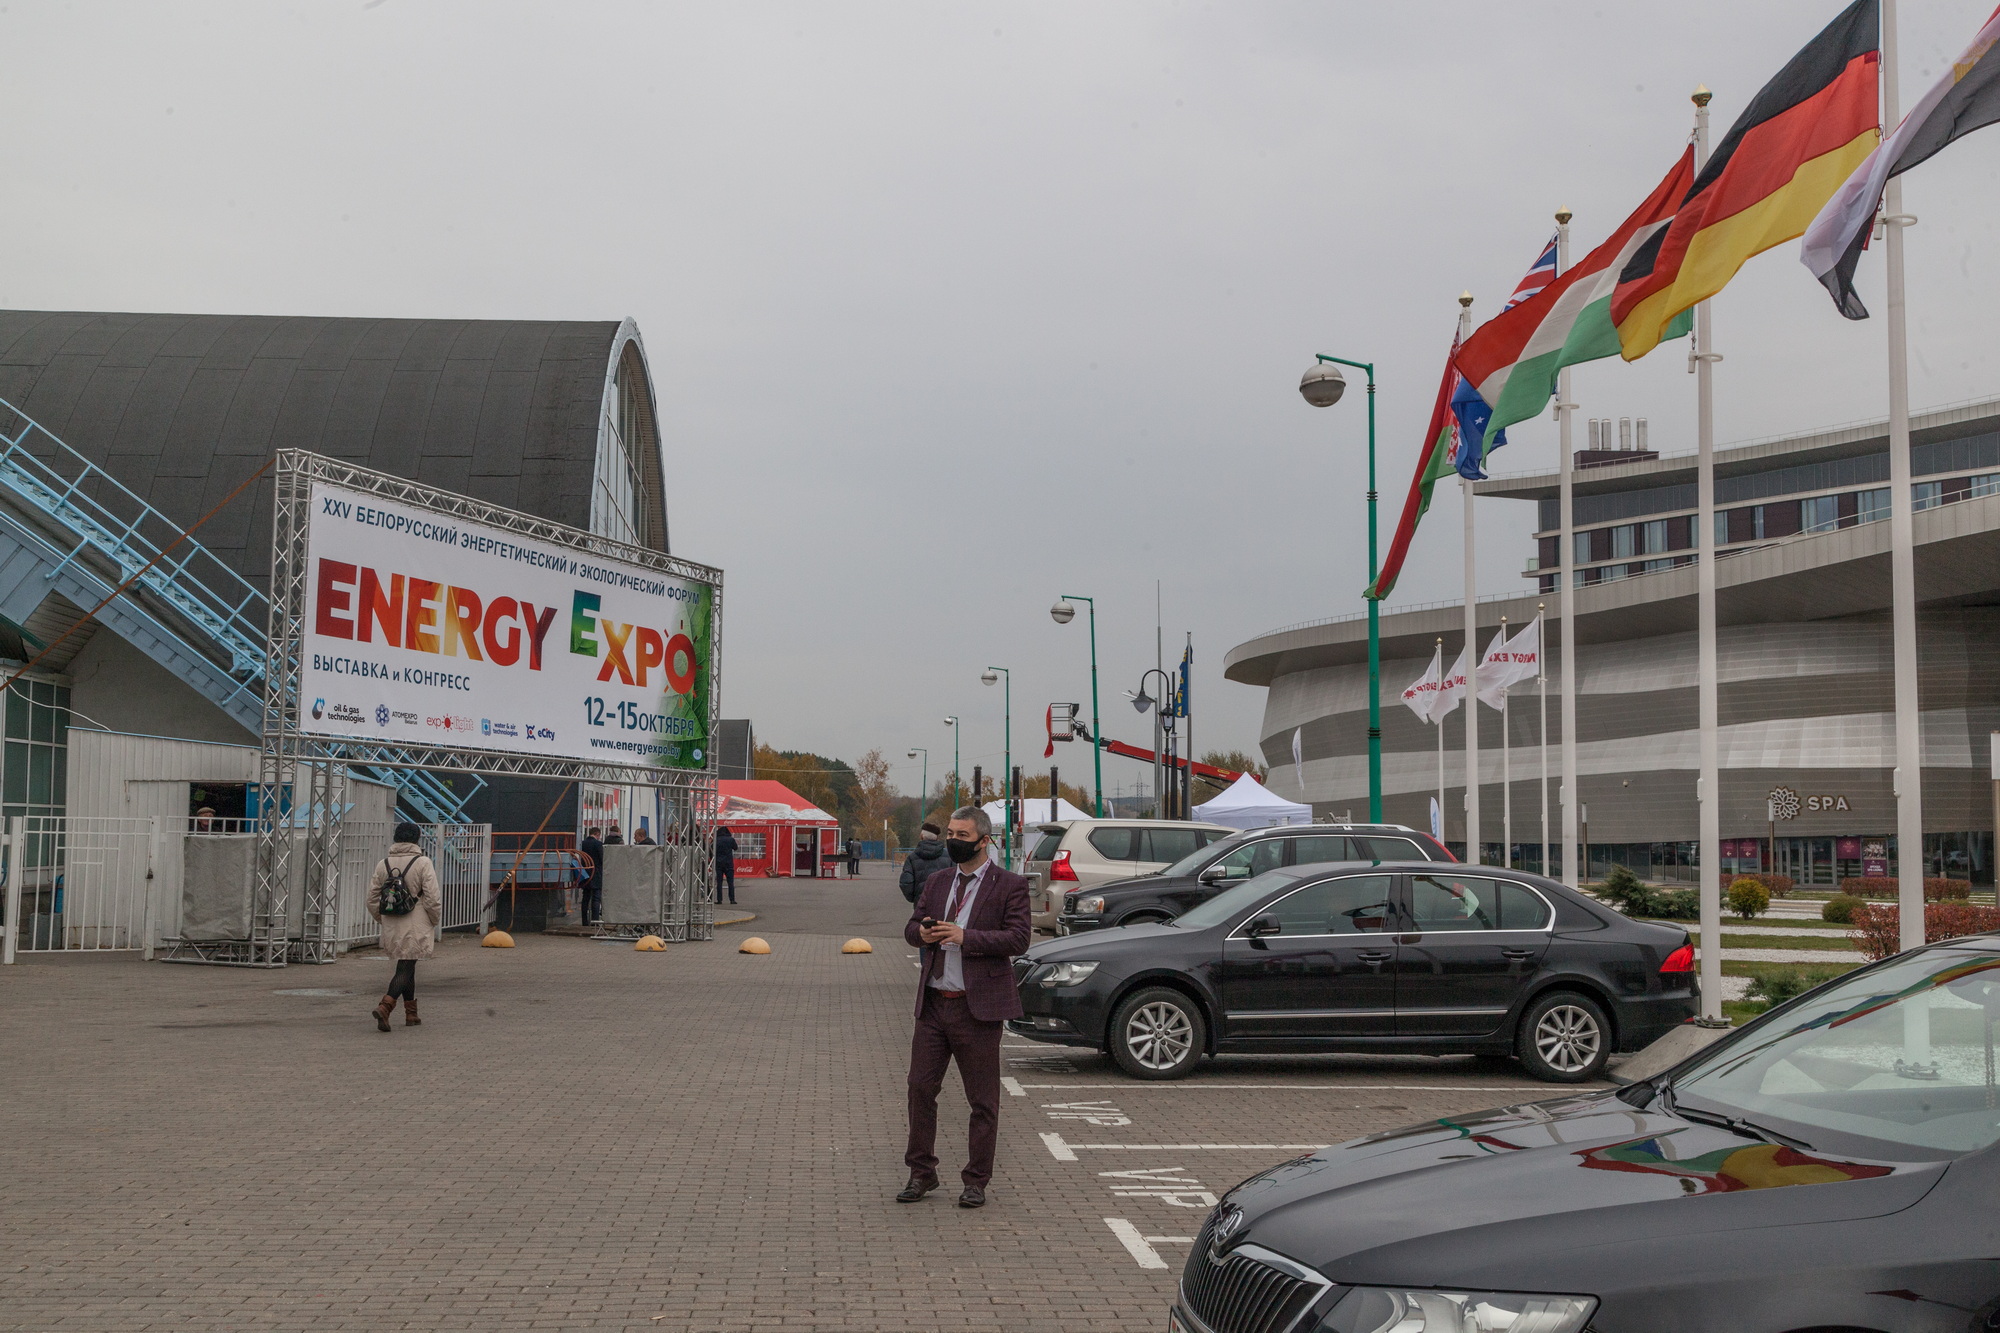  «Экономические и экологические аспекты ядерной энергетики» в рамках Energy Expo 2021